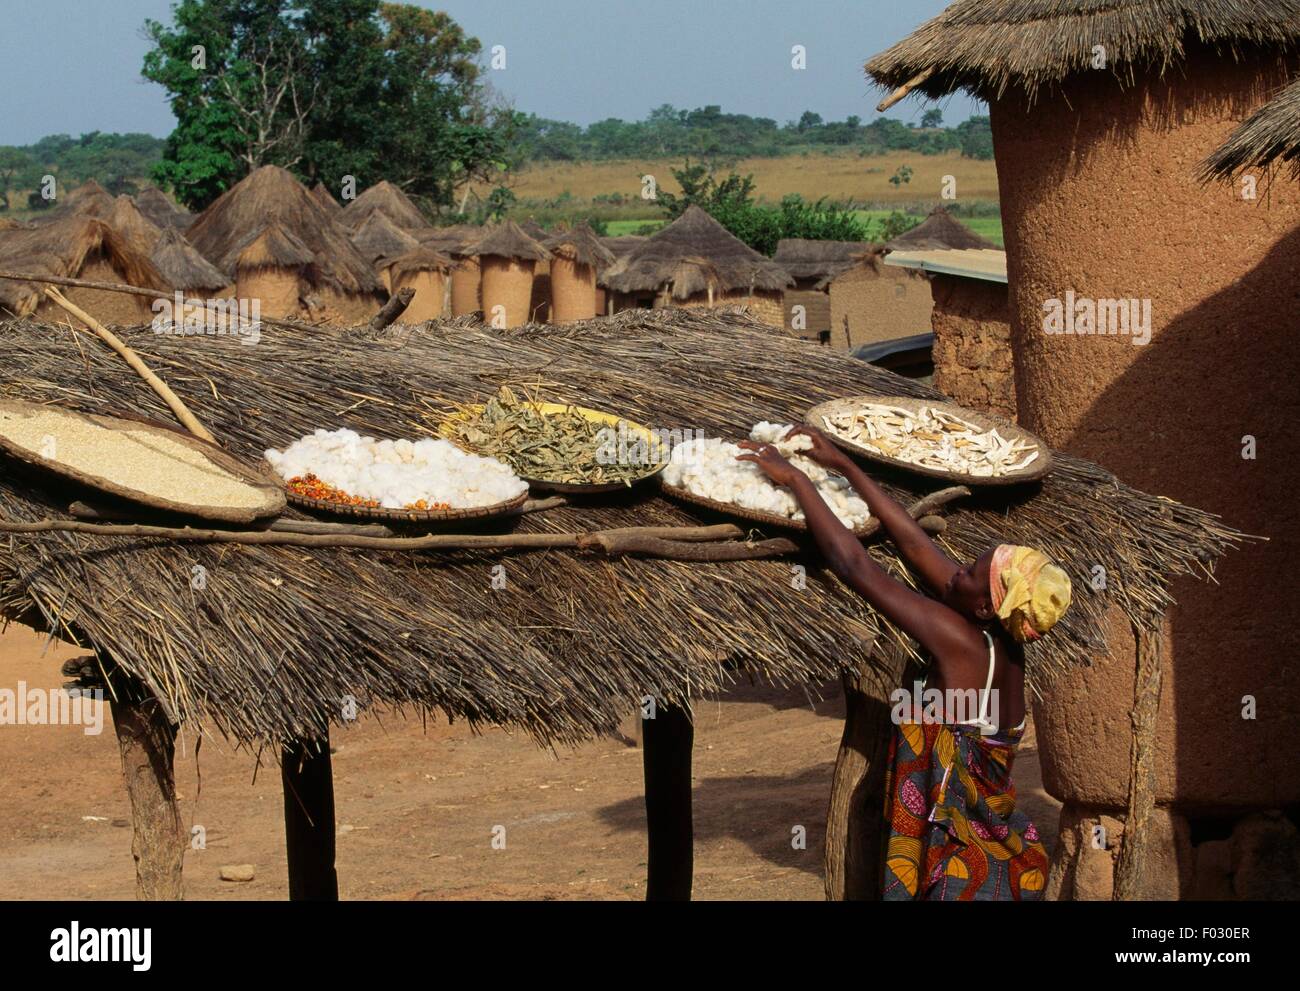 La nourriture dans le soleil sur un toit de paille, Sénoufo, Côte d'Ivoire. Banque D'Images